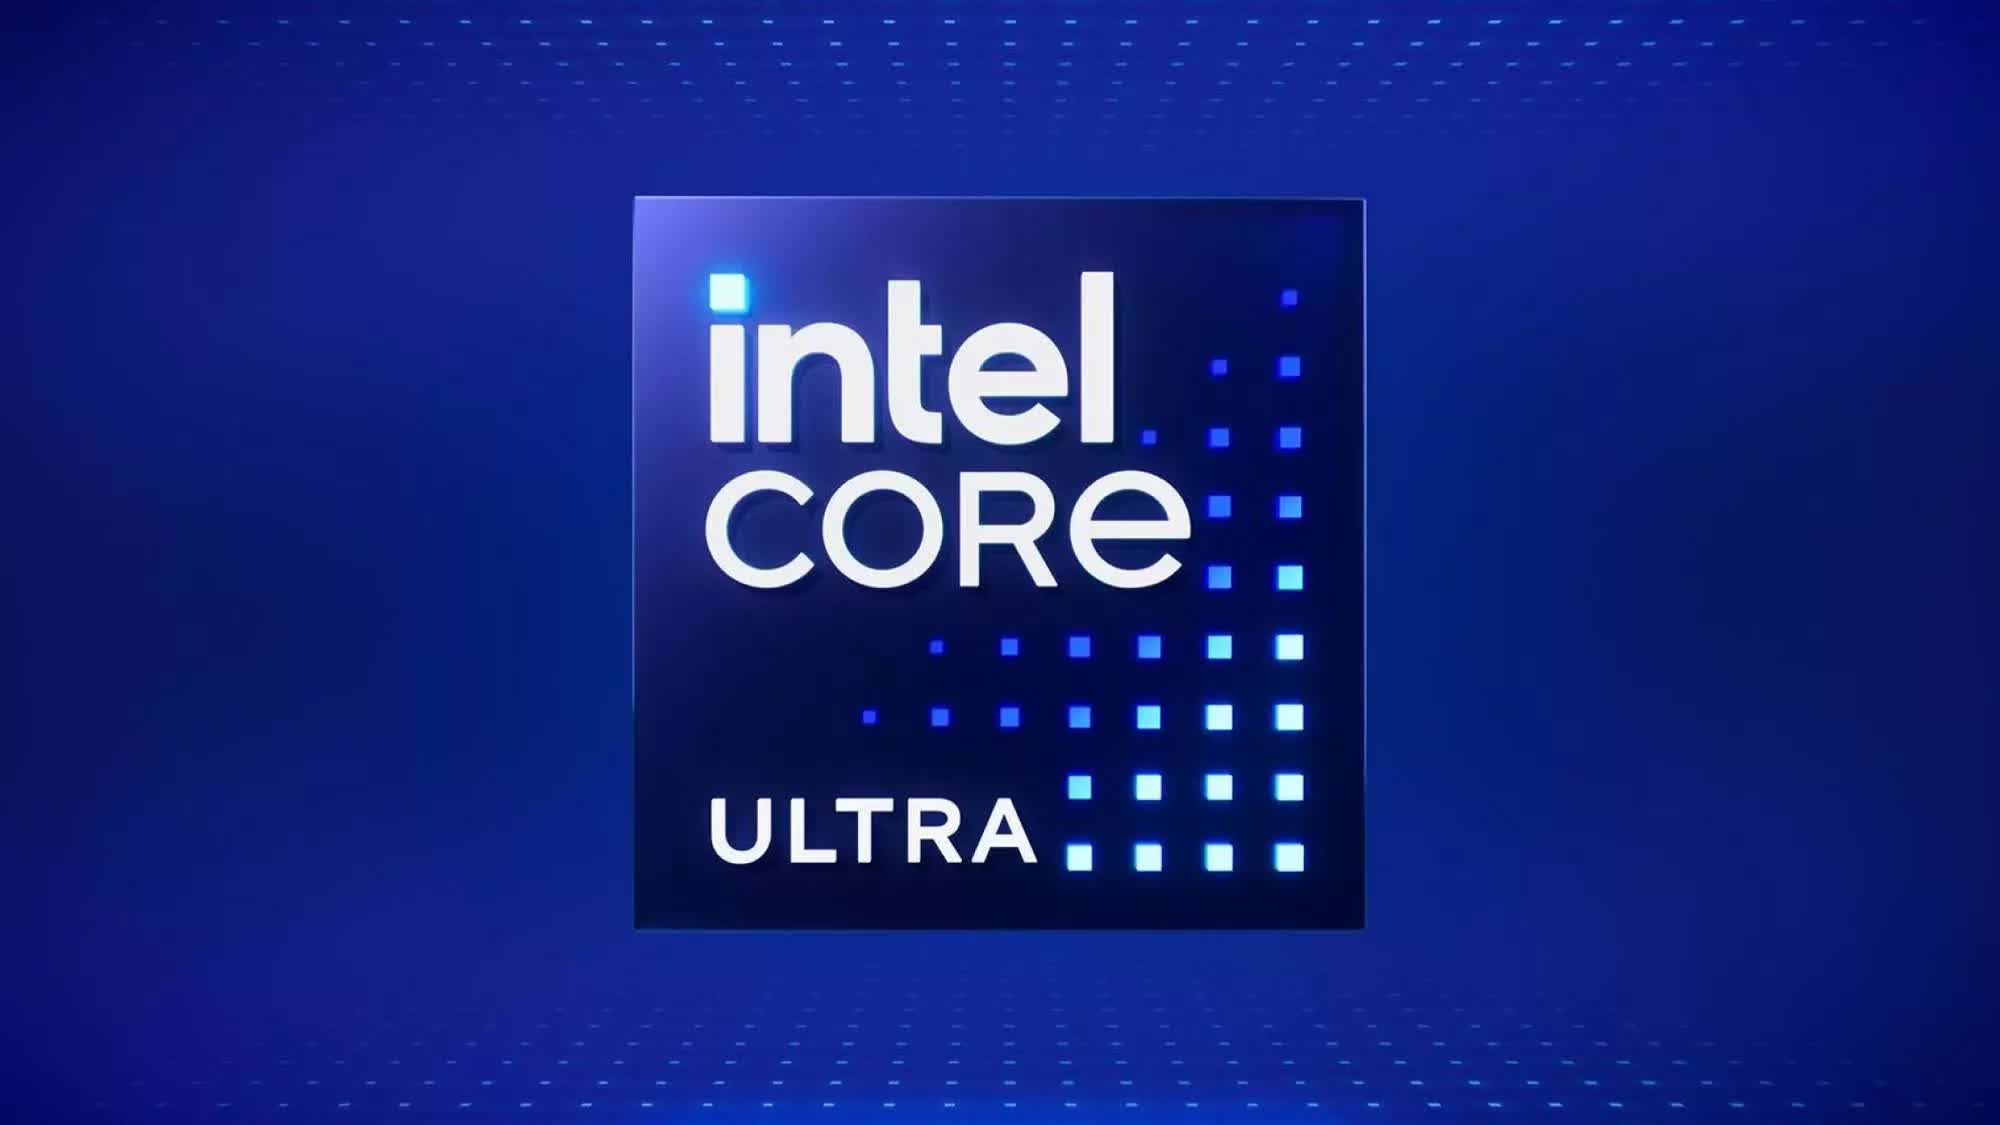 Los próximos procesadores Panther Lake de Intel se detallan en una filtración: 16 núcleos de CPU y 12 núcleos de GPU Celestial